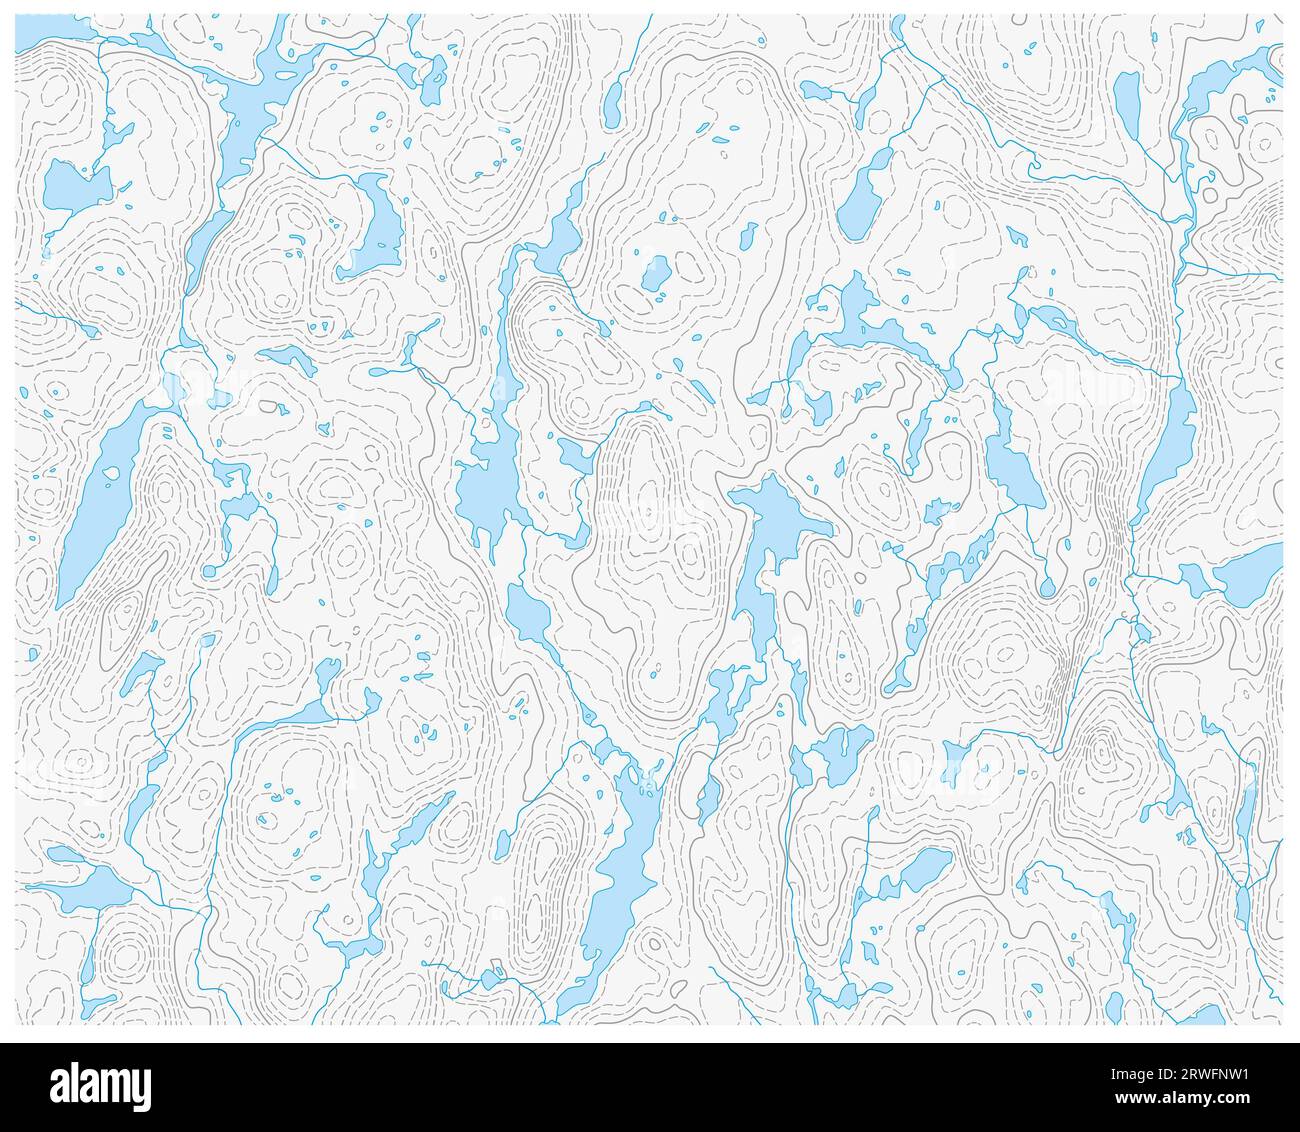 Carte vectorielle topographique avec lac, rivière et isoligne Banque D'Images